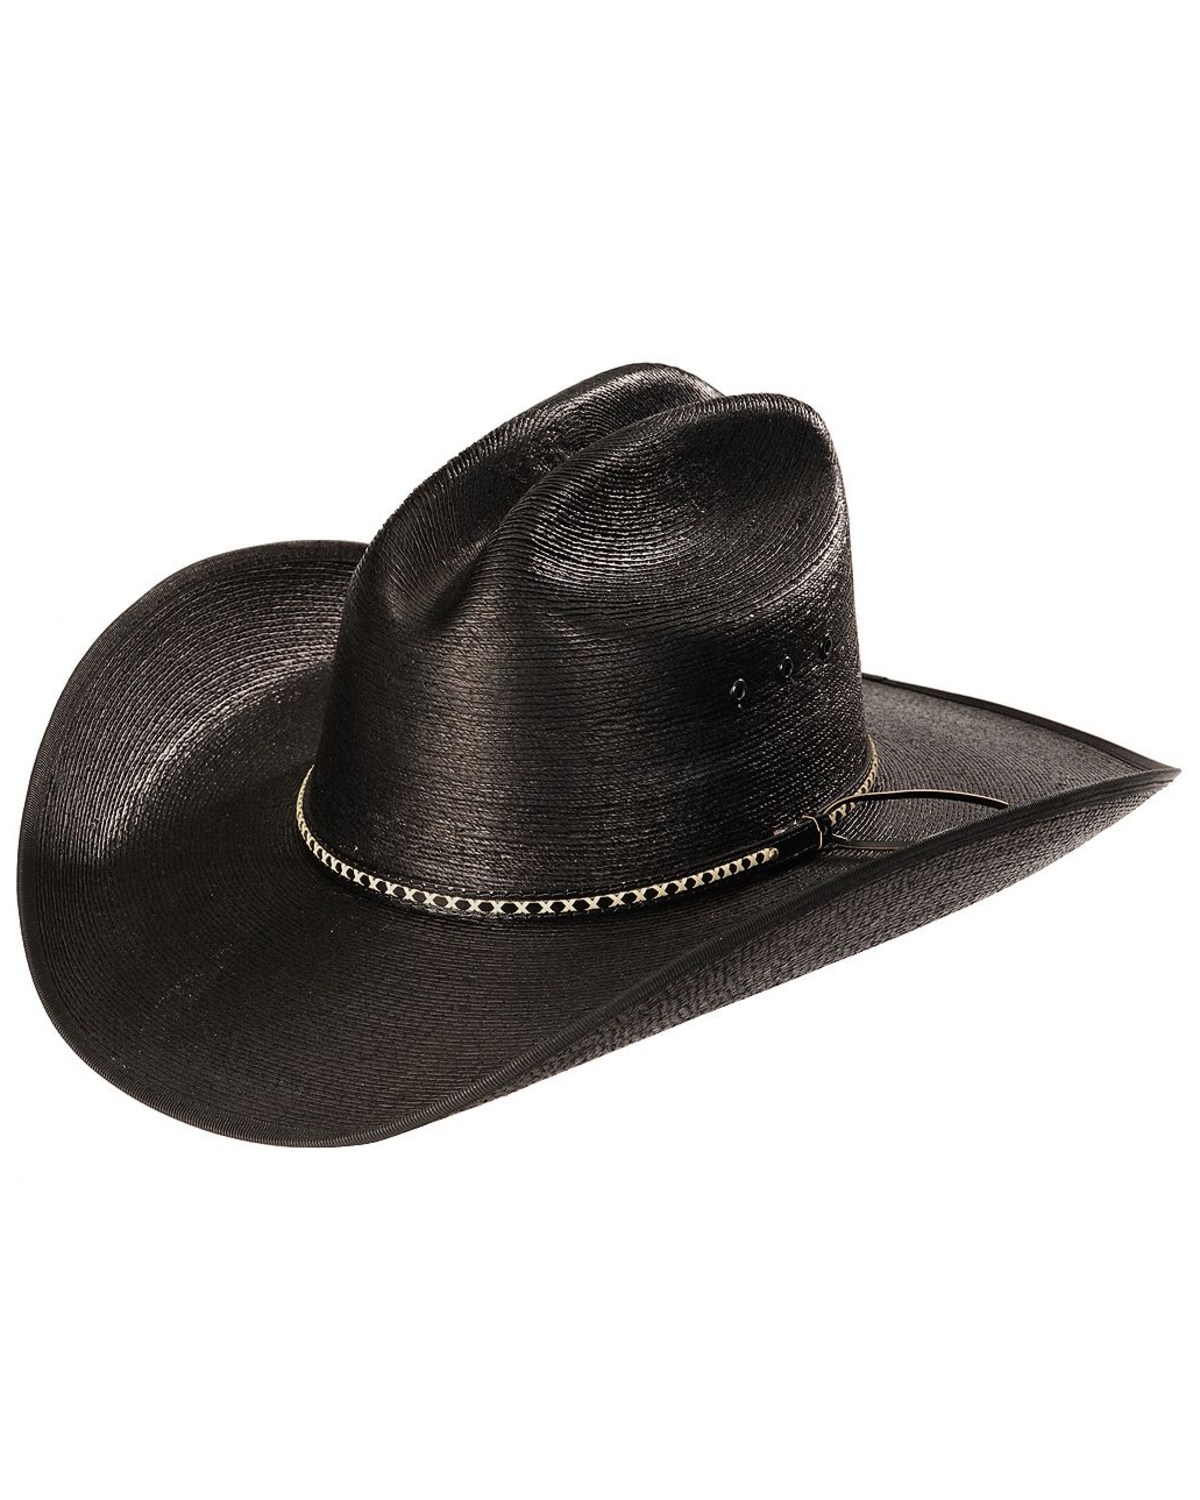 Resistol Men's Jason Aldean Asphalt Cowboy Palm Hat